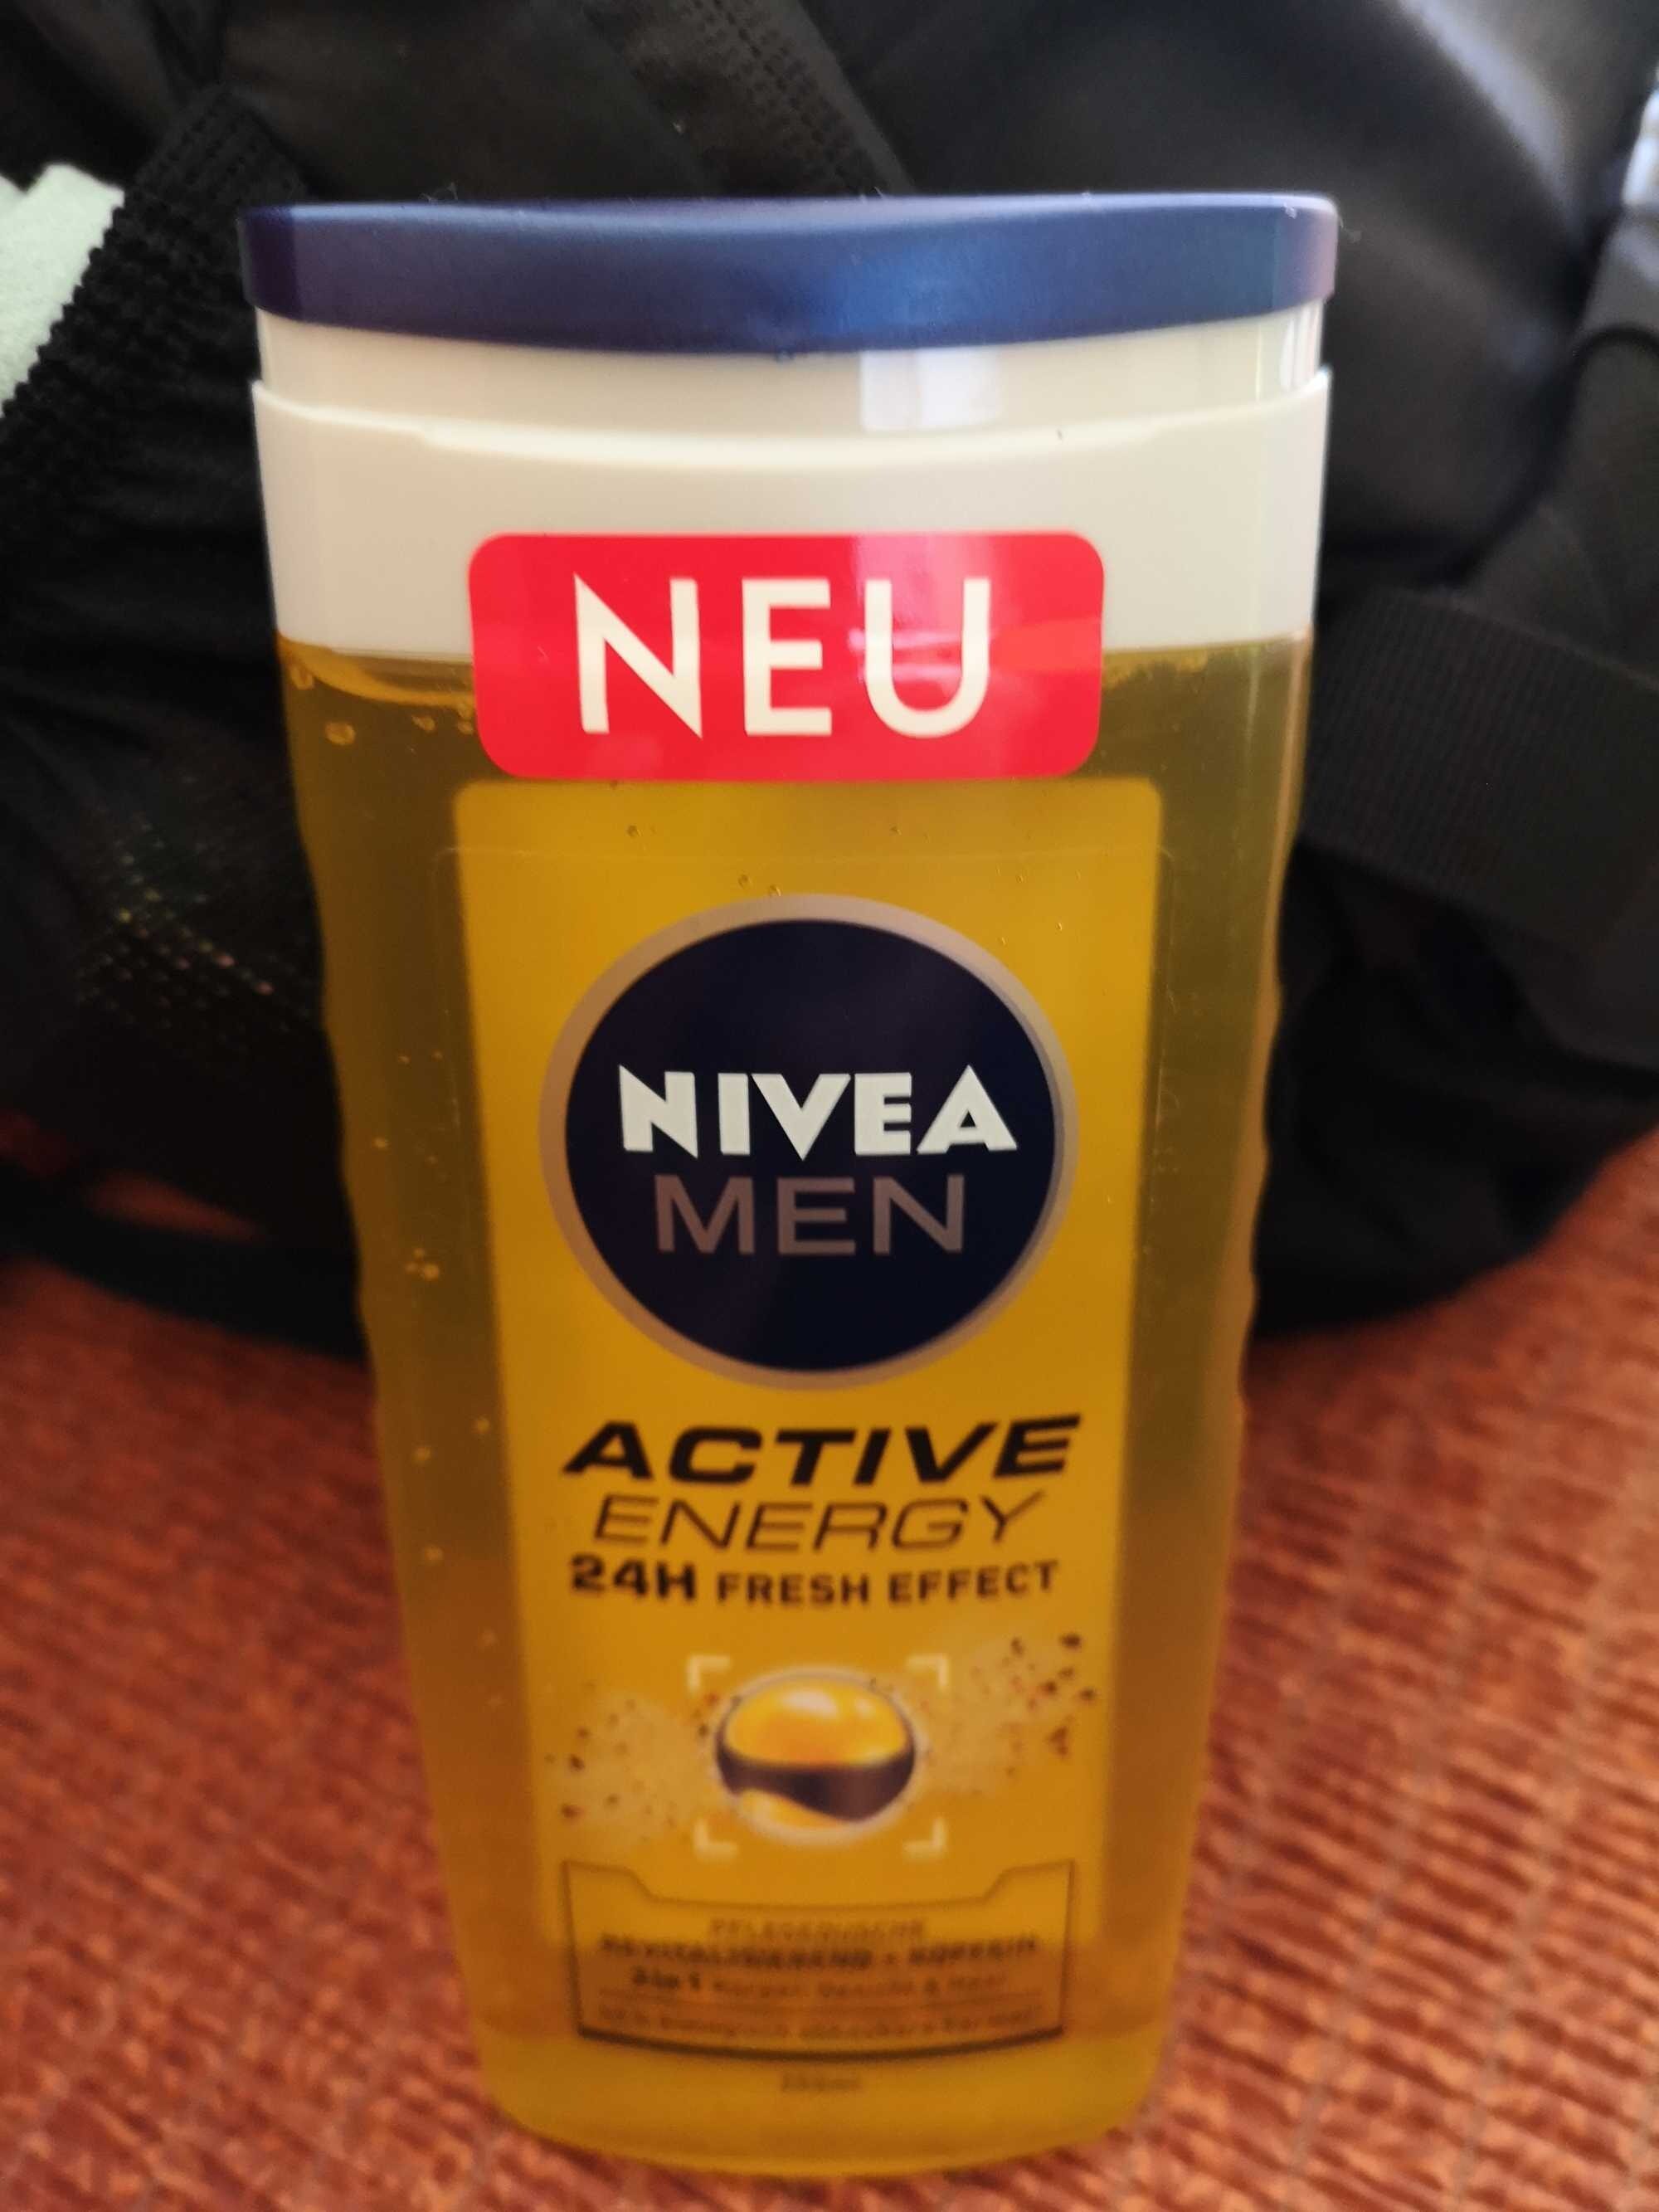 Nivea Men Active Energy 24h Fresh Effect - Produit - de